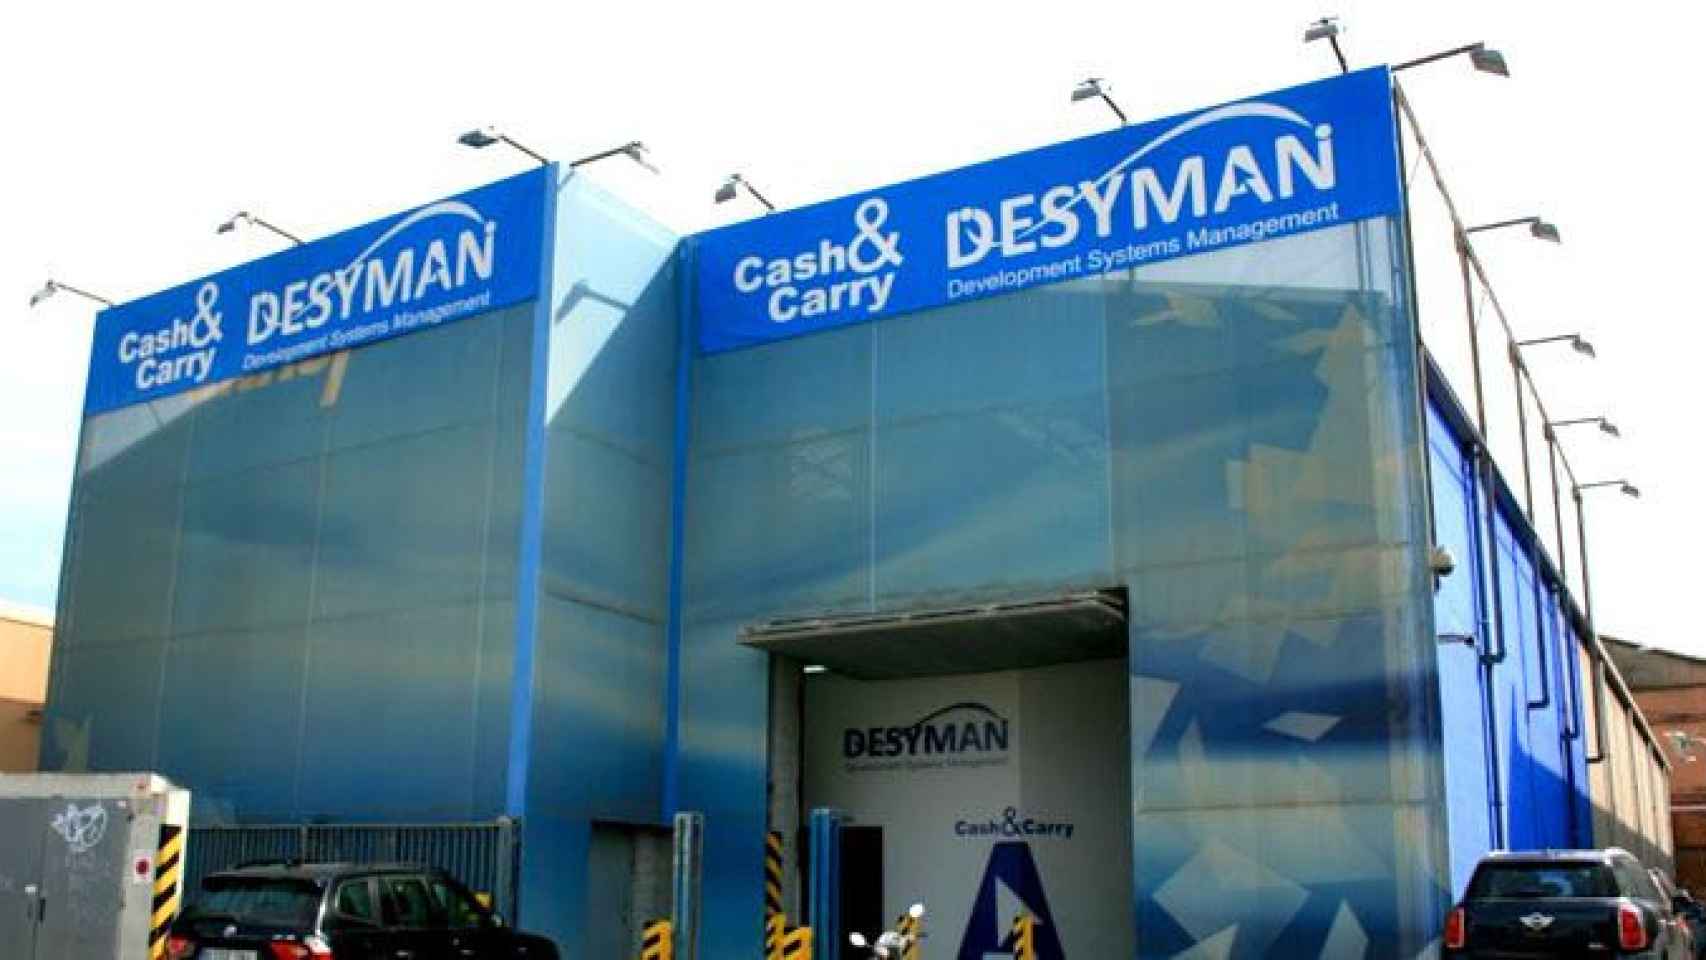 Development Systems & Management SA (Desyman), mayorista de material informático, una de las empresas que se fuga hoy de Cataluña / CG